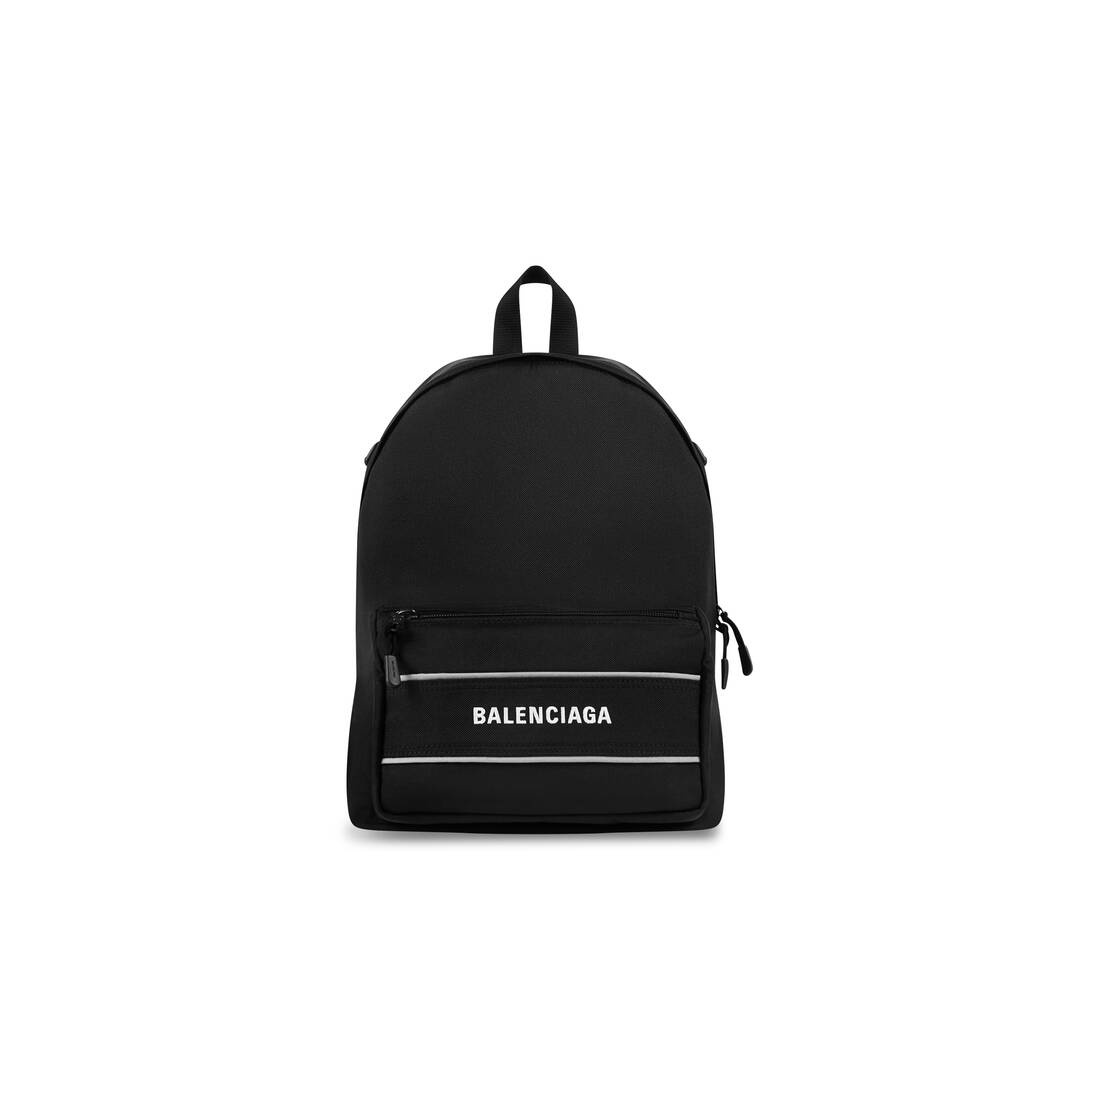 Men's Sport Crossbody Backpack in Black/white - 1